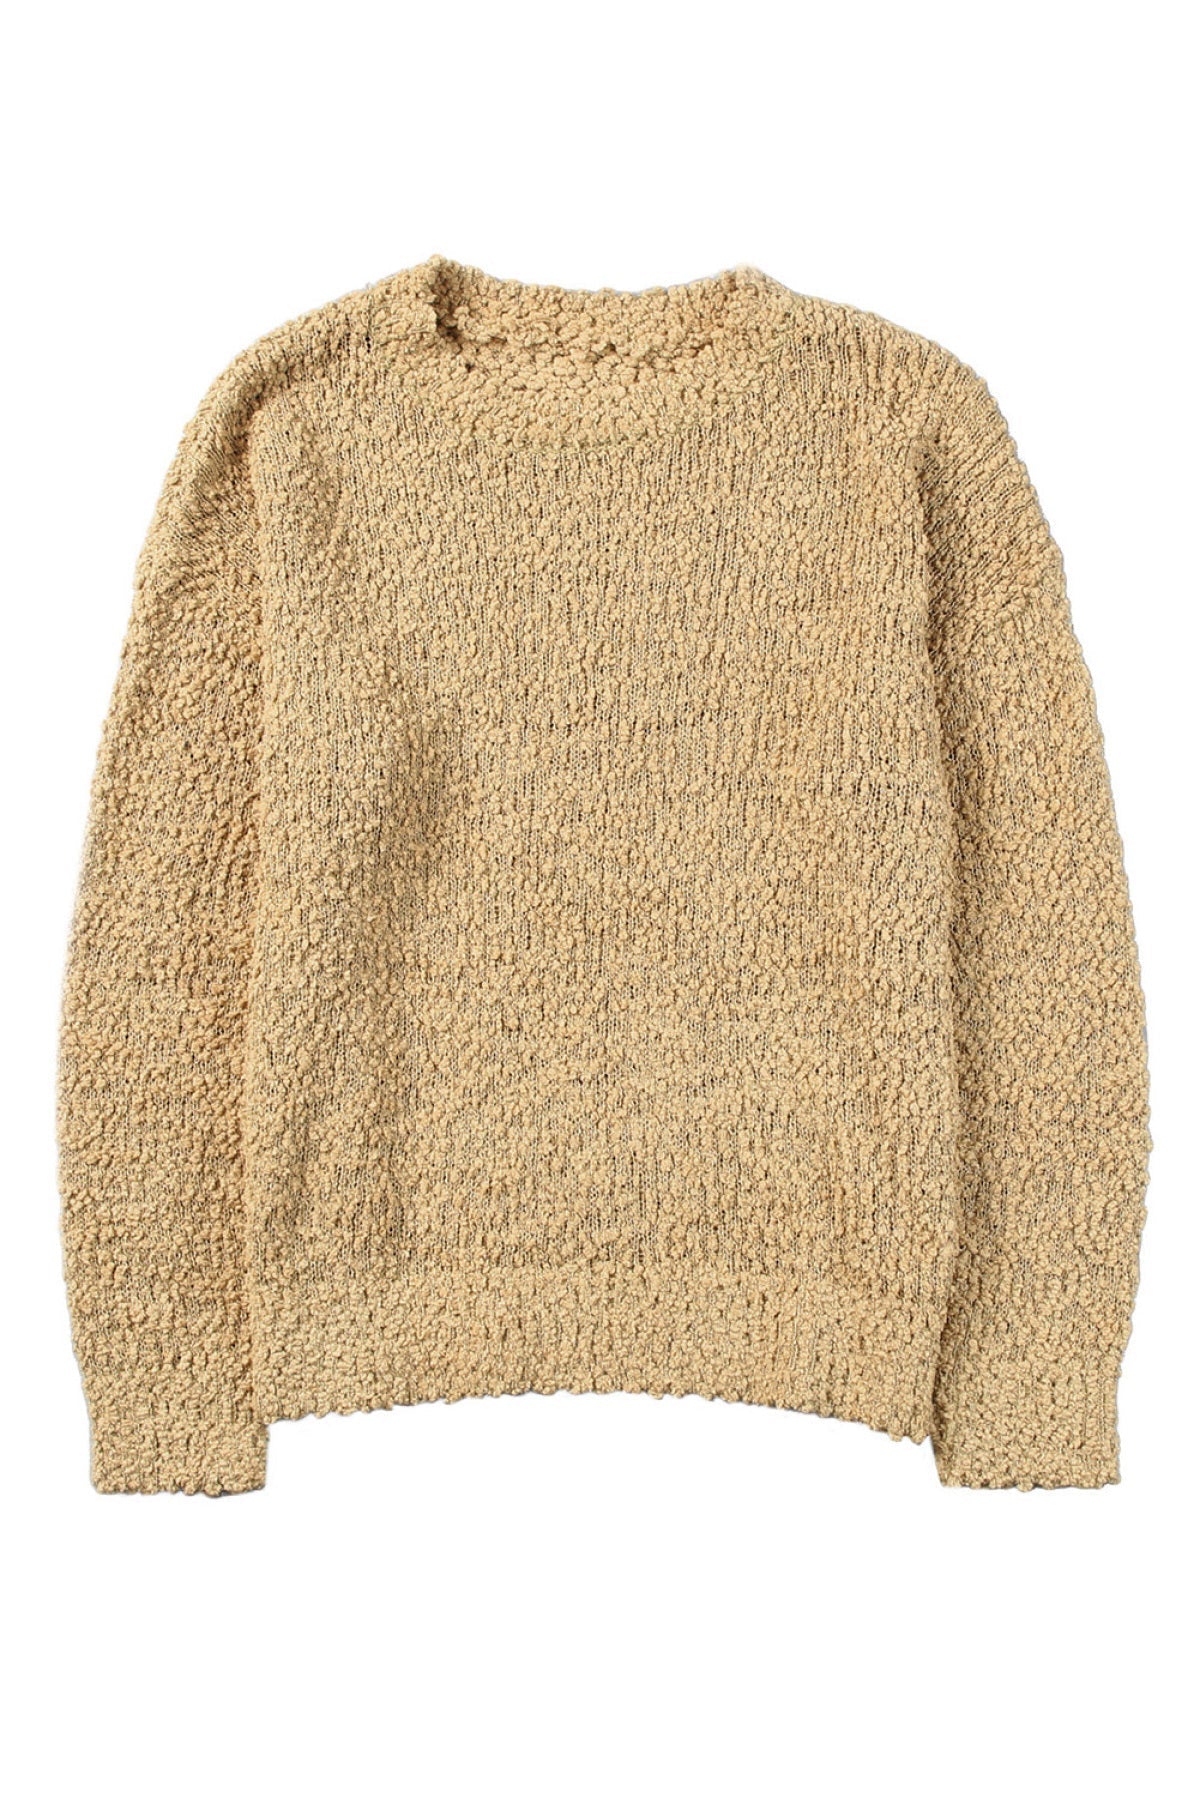 Apricot Porncorn Drop Shoulder Pullover Knit Sweater â€“ Boheme Crush Boutique